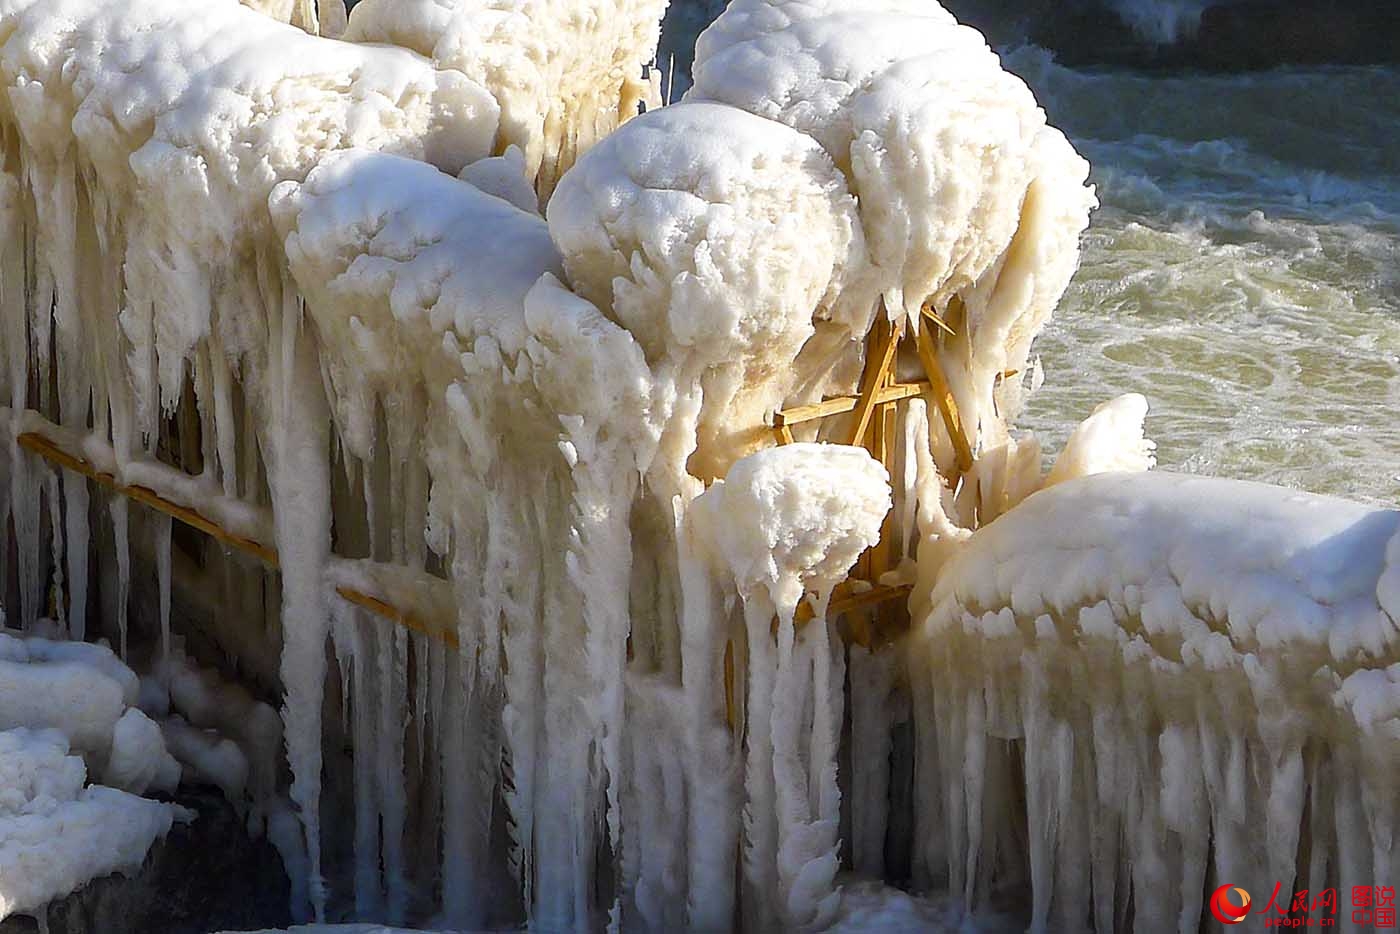 中国黄河壶口瀑布现冬季奇观十里龙槽浮满冰凌宛如巨龙 - 图说世界 - 龙腾网